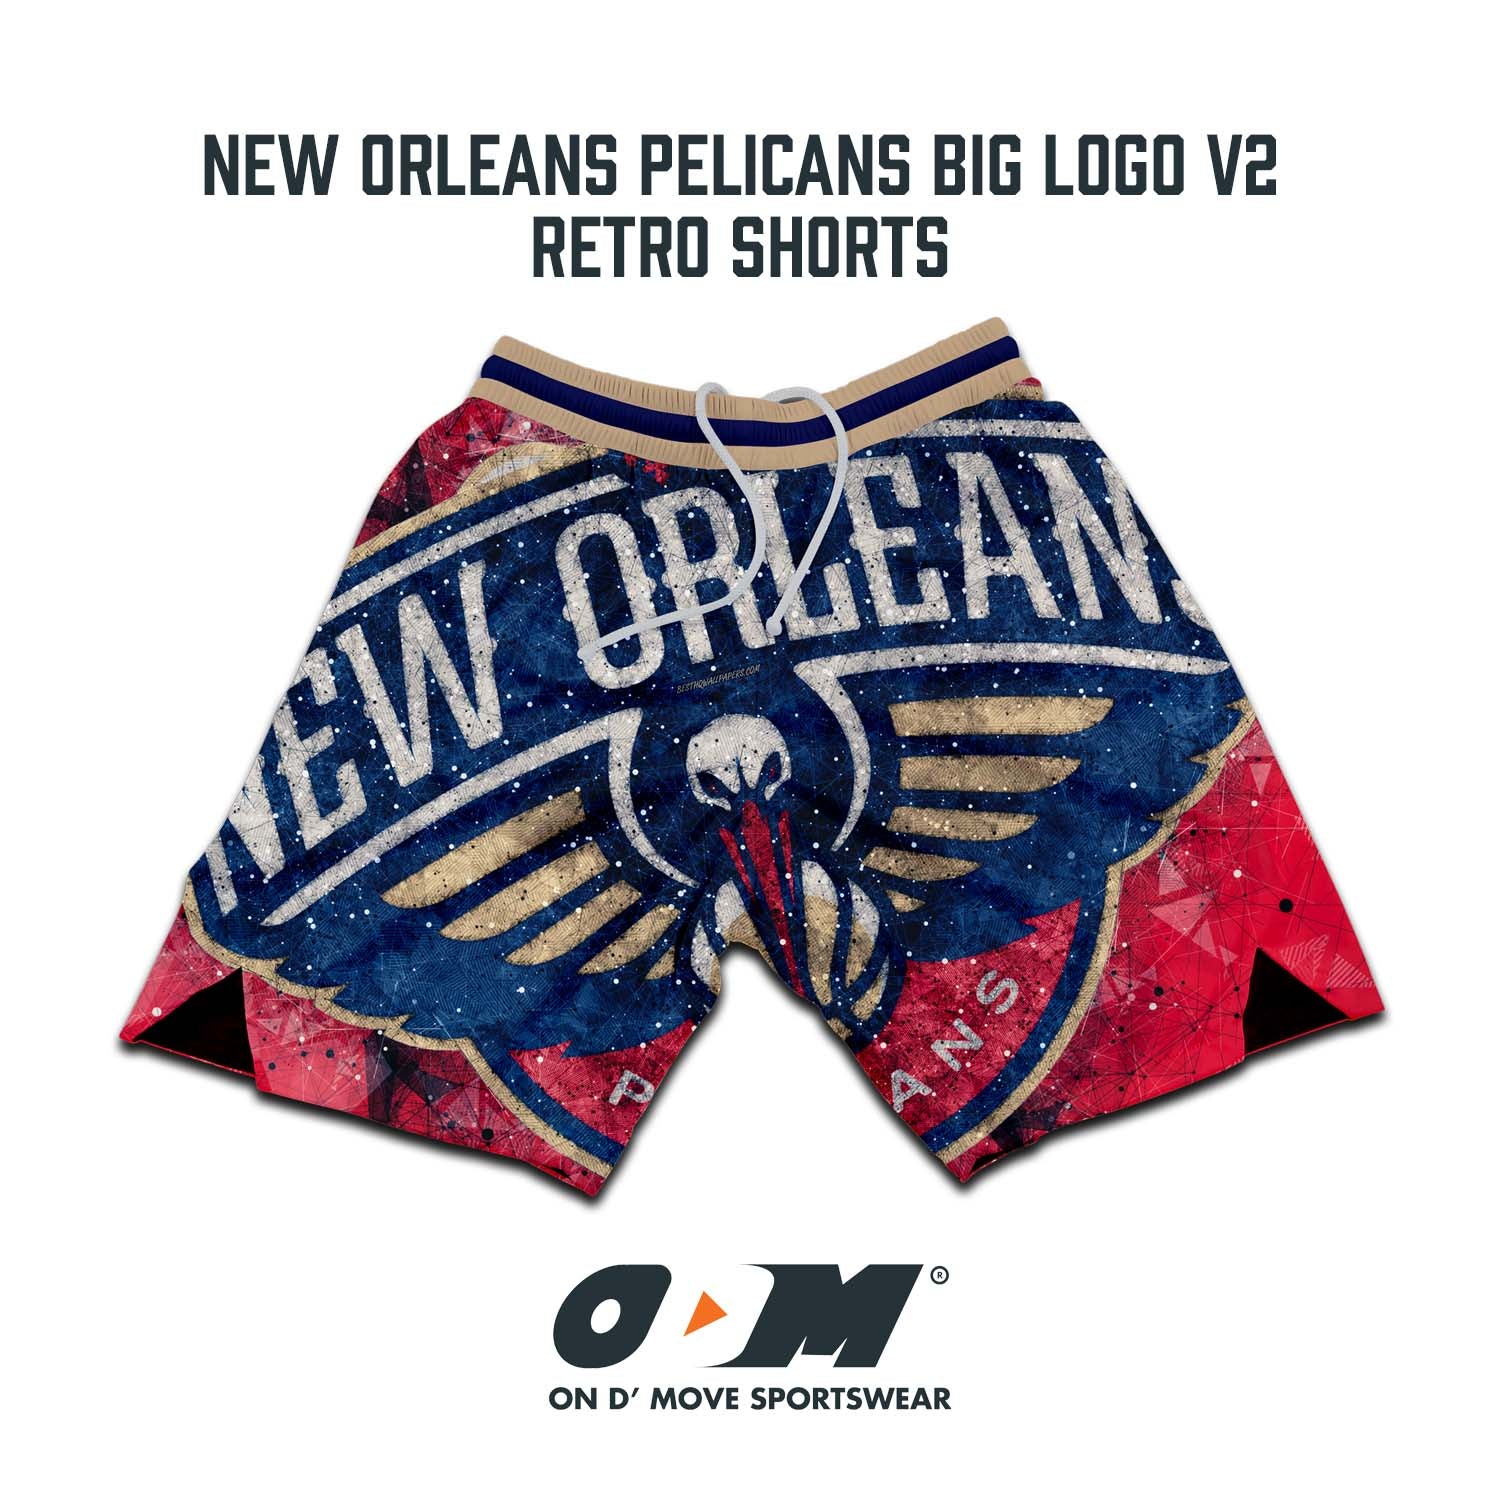 New Orleans Pelicans Big Logo v2 Retro Shorts